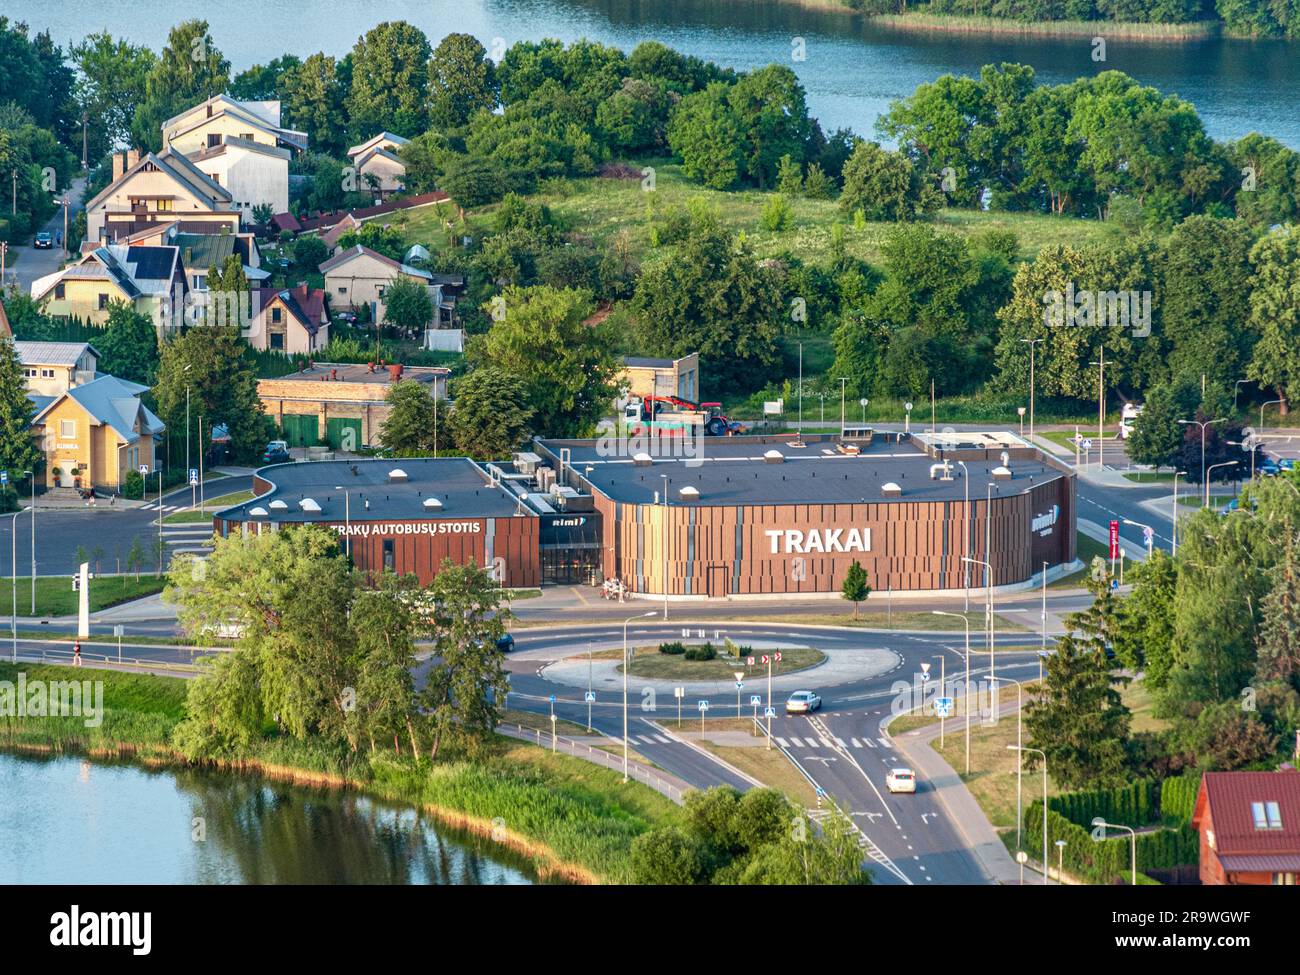 Nouvelle station de bus Trakai, vue aérienne depuis un ballon à air chaud Banque D'Images